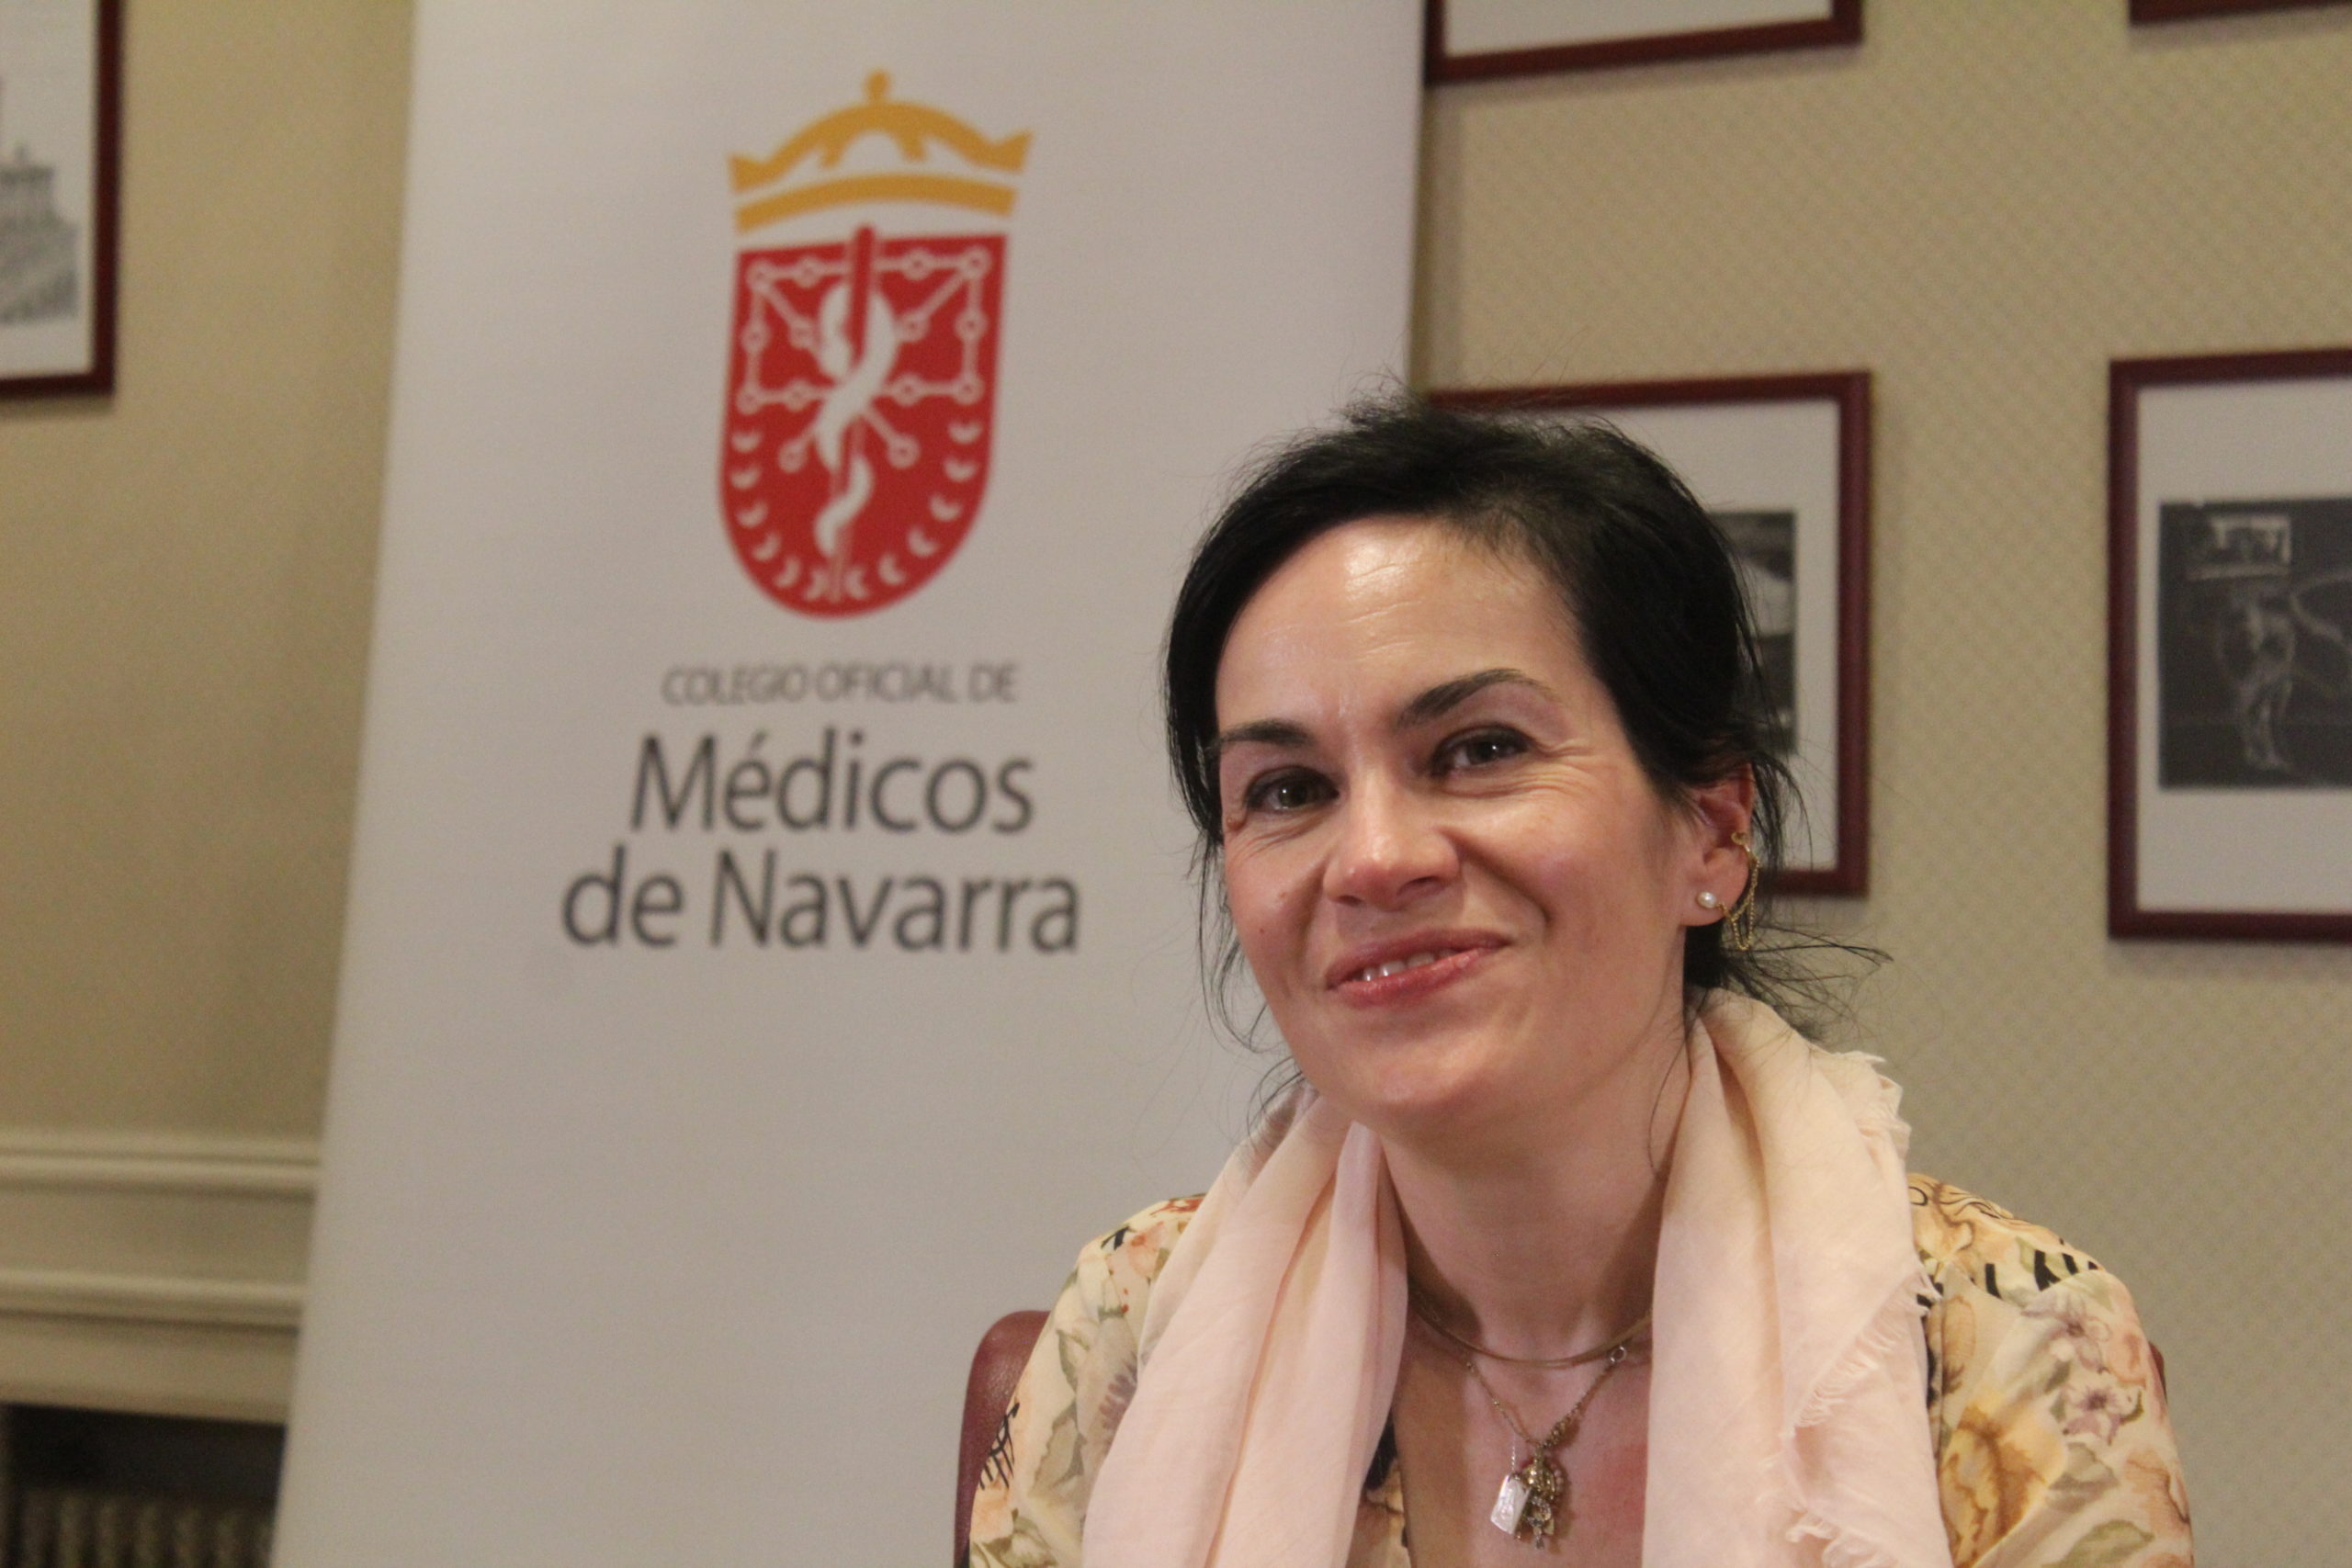 Rebeca Hidalgo: “El secreto profesional es uno de los pilares básicos sobre los que se asienta la relación médico paciente”.